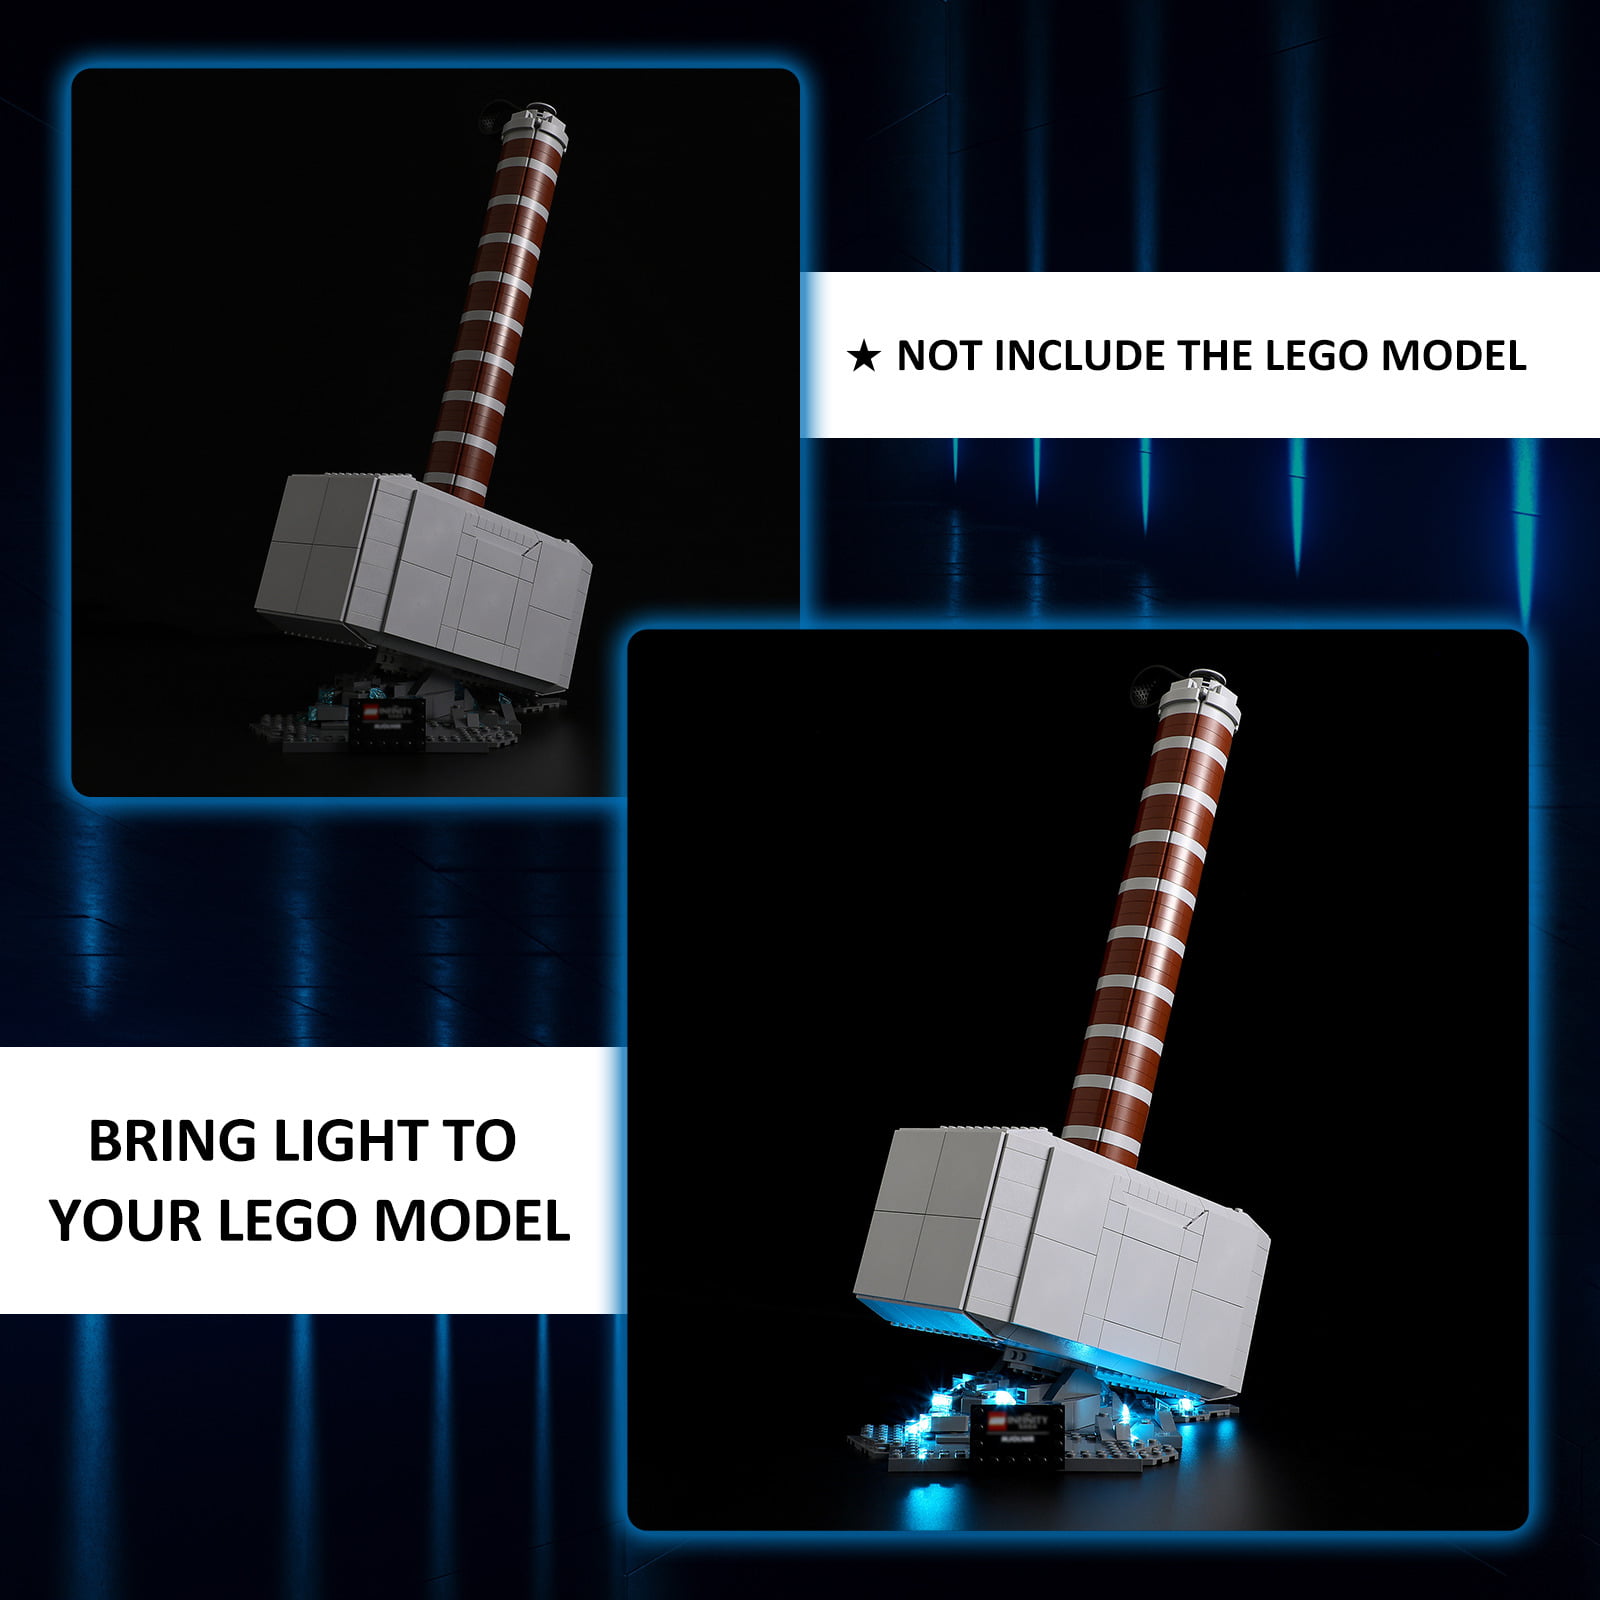 YEABRICKS Led Light Kit for Legos 76209 Marvel Thor's Hammer